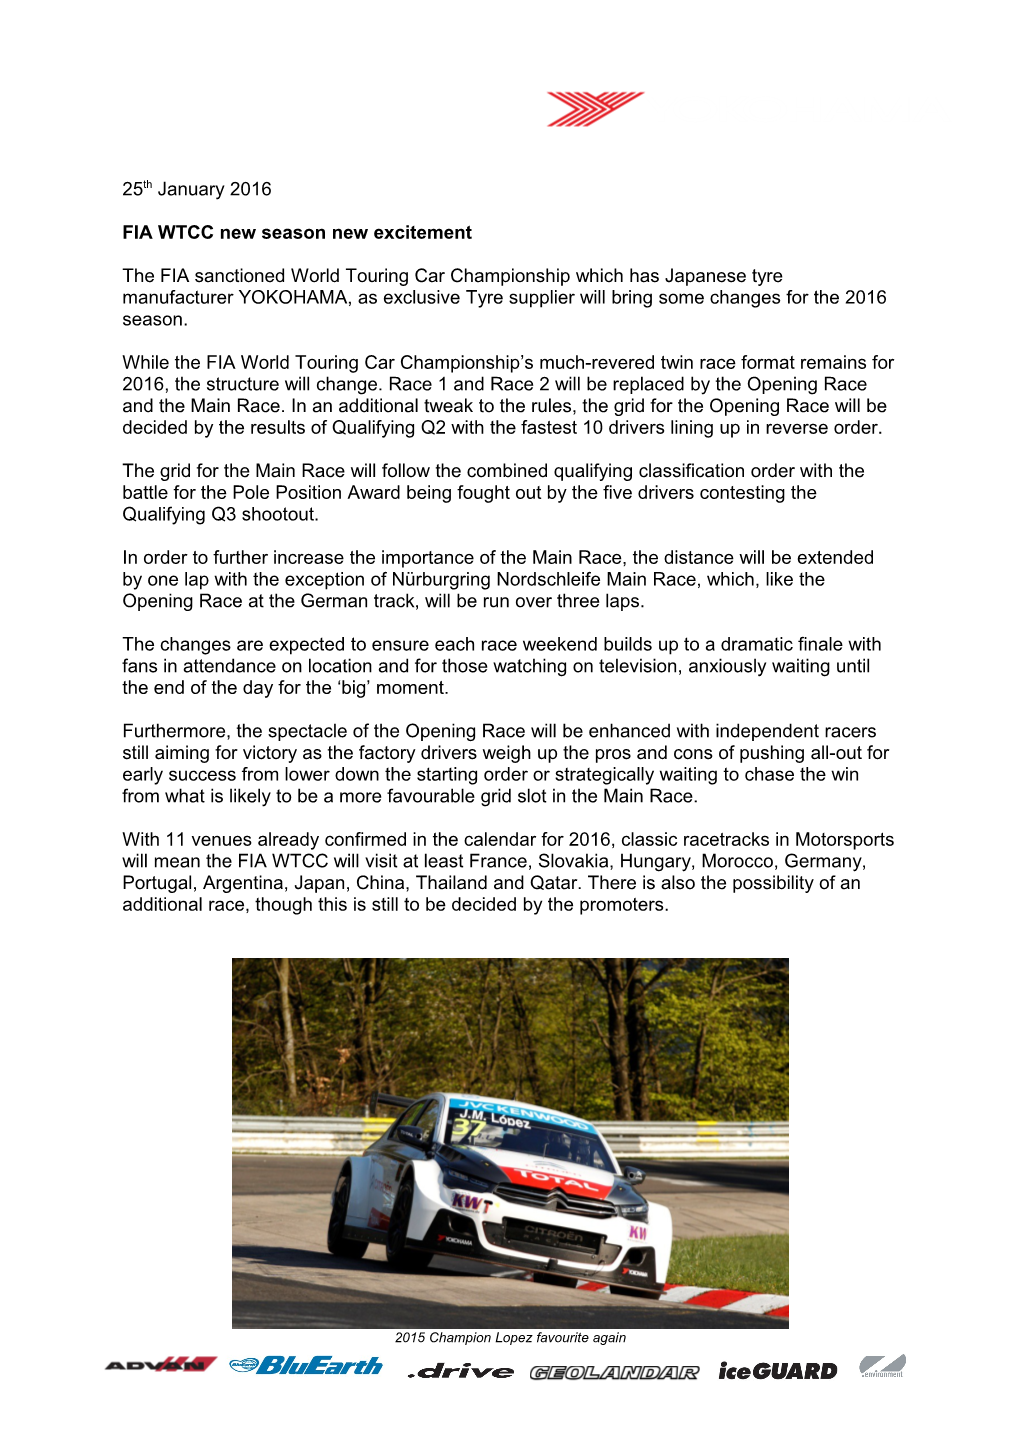 FIA WTCC New Season New Excitement